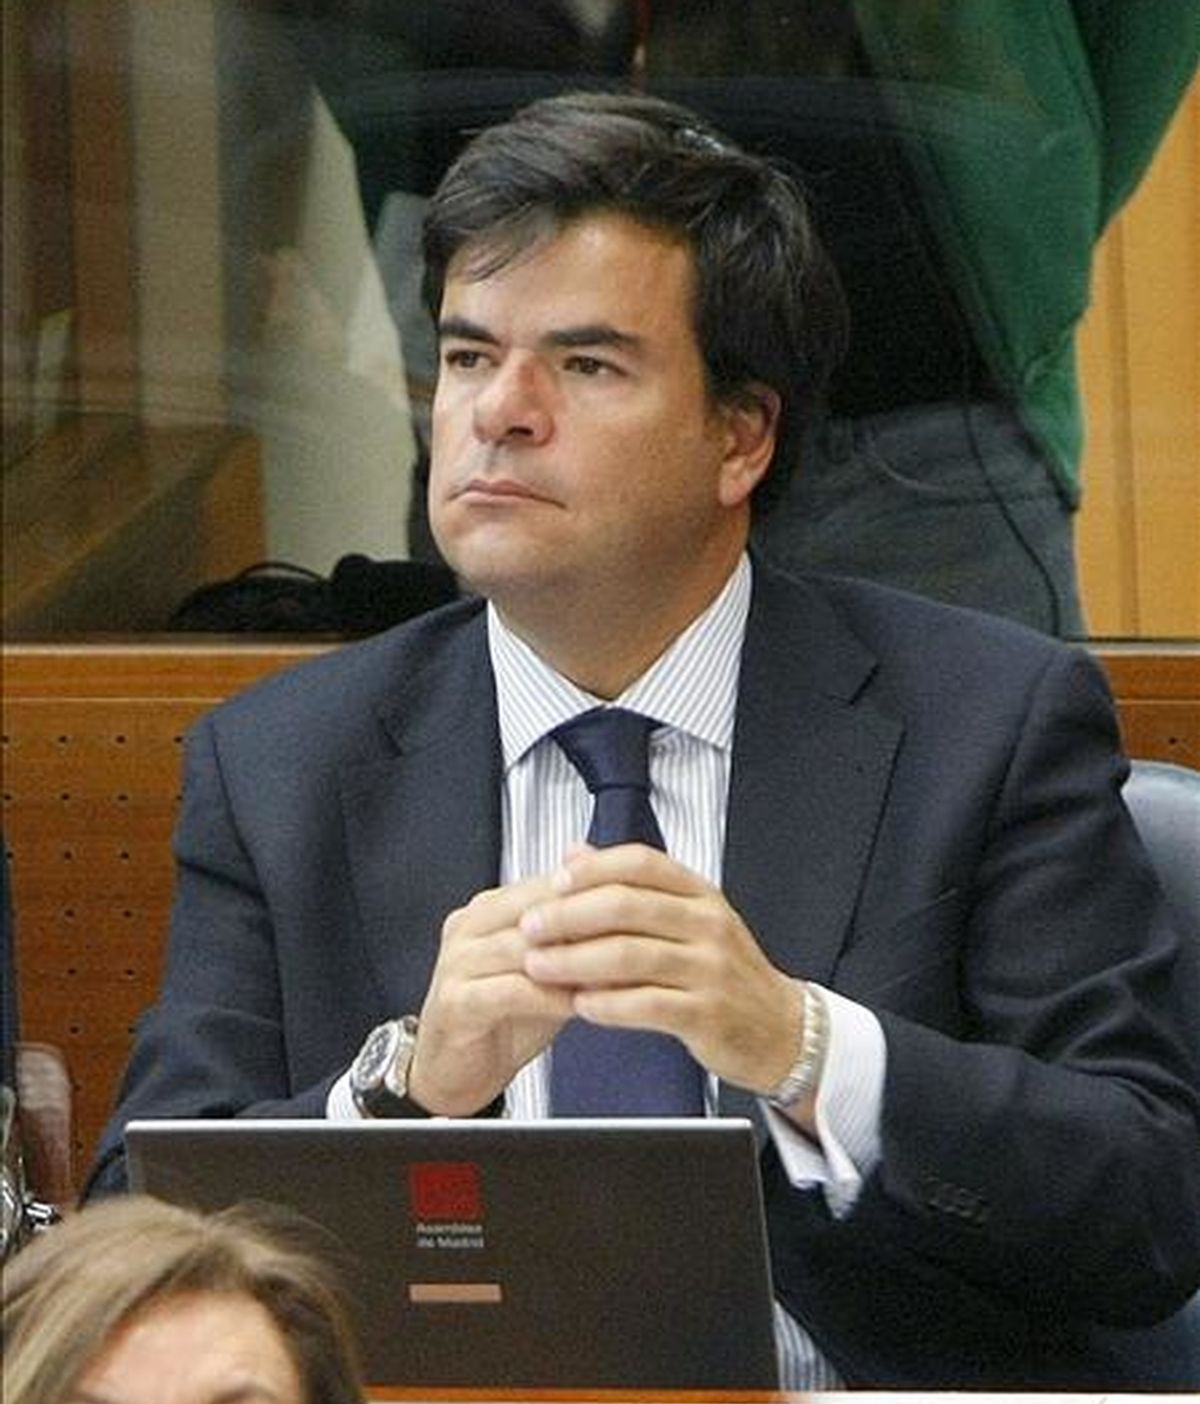 El diputado del PP Alfonso Bosch, quien se ha convertido en el primer aforado del PP imputado por el "caso Gürtel". EFE/Archivo